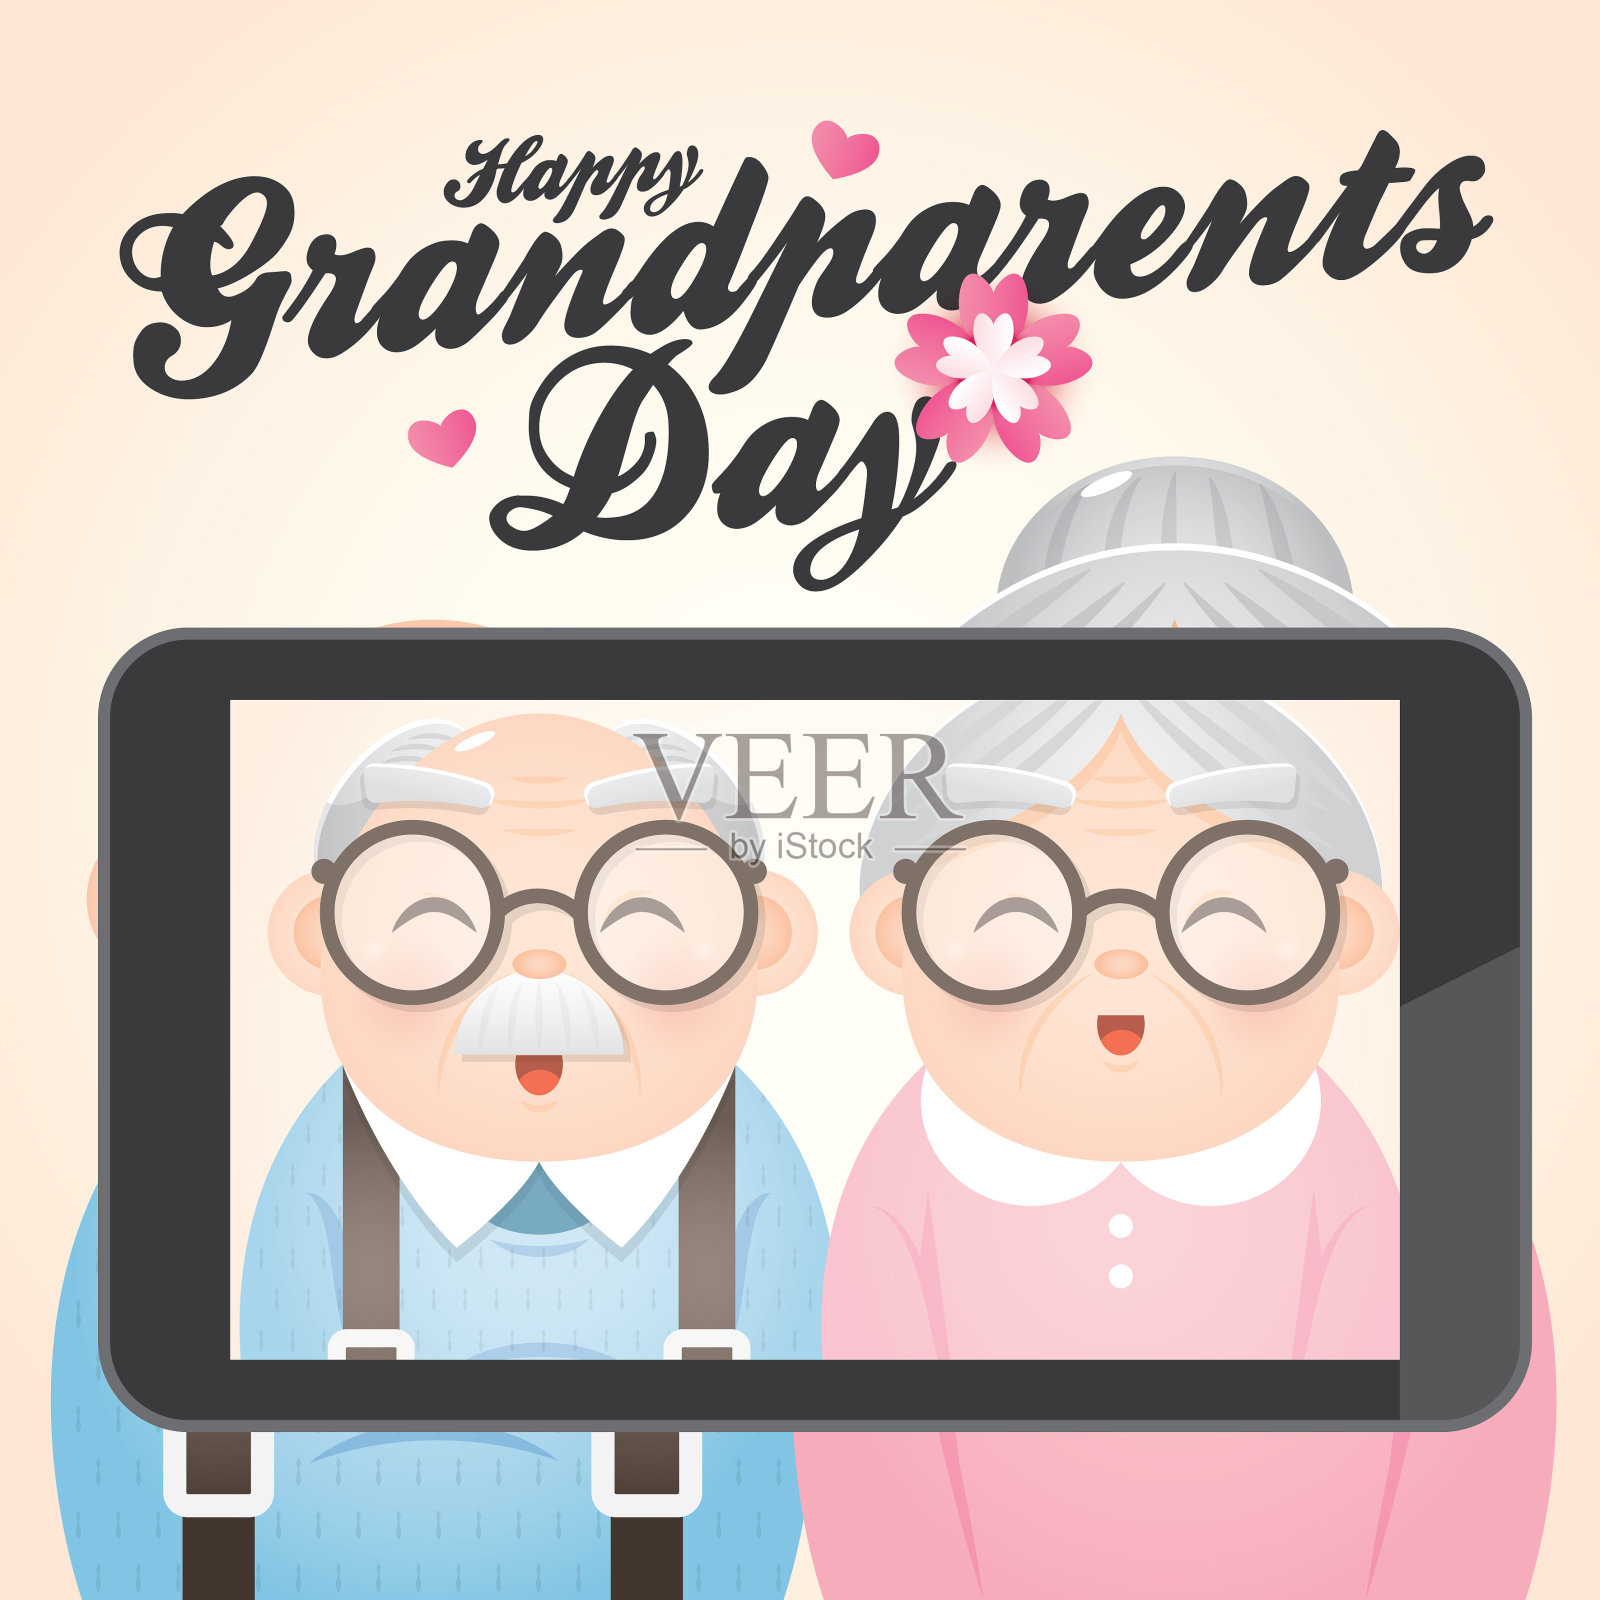 快乐的爷爷奶奶节问候向量与微笑的爷爷和奶奶拍照的电话。设计模板素材